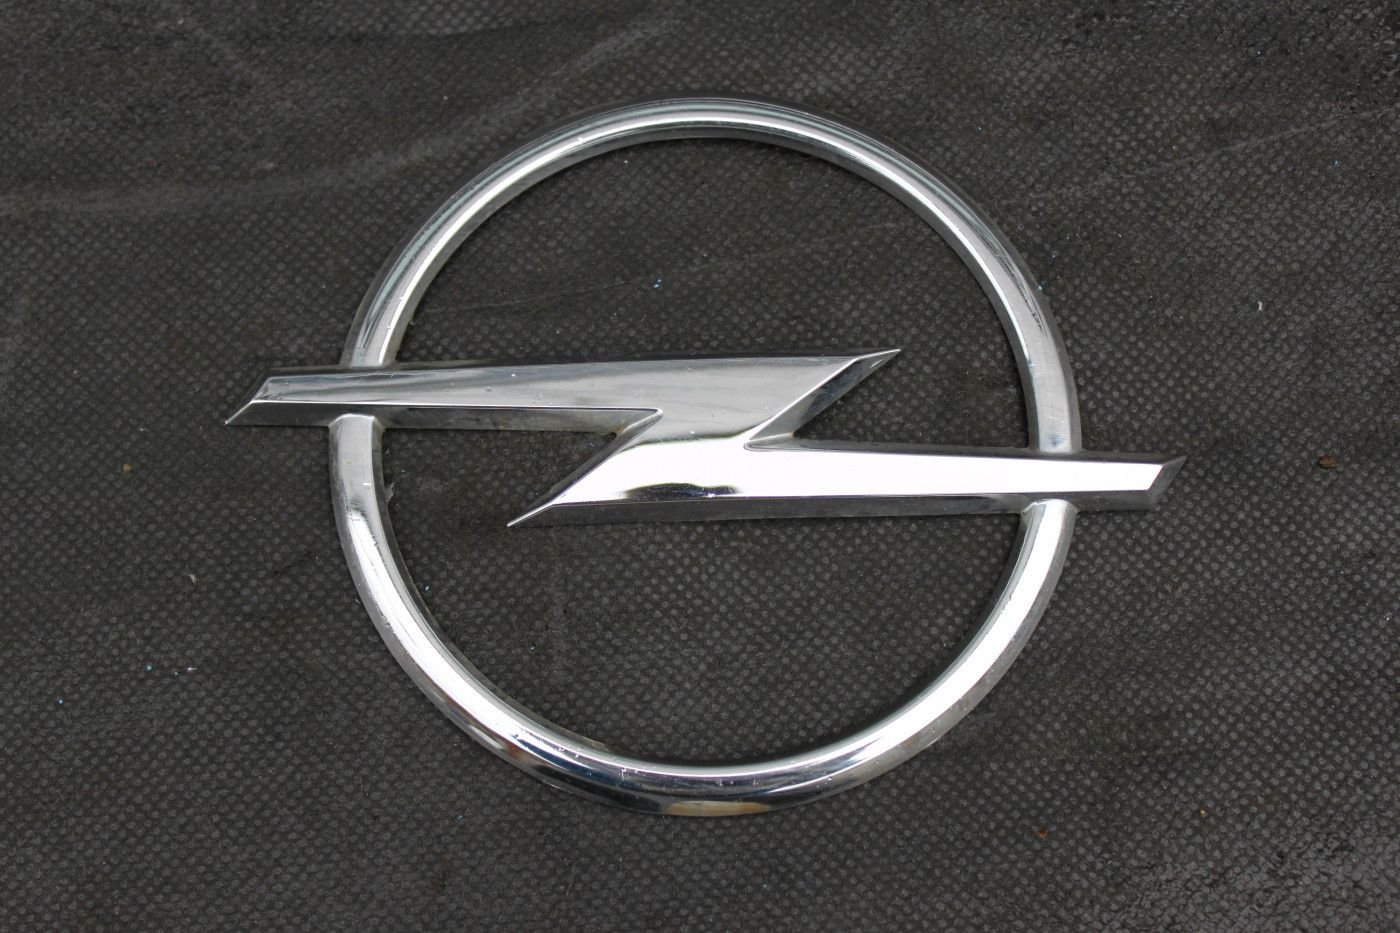 Genuino Nuevo Opel Astra Cavalier Clásico Ala insignia emblema Mk3 III 1988-1995 